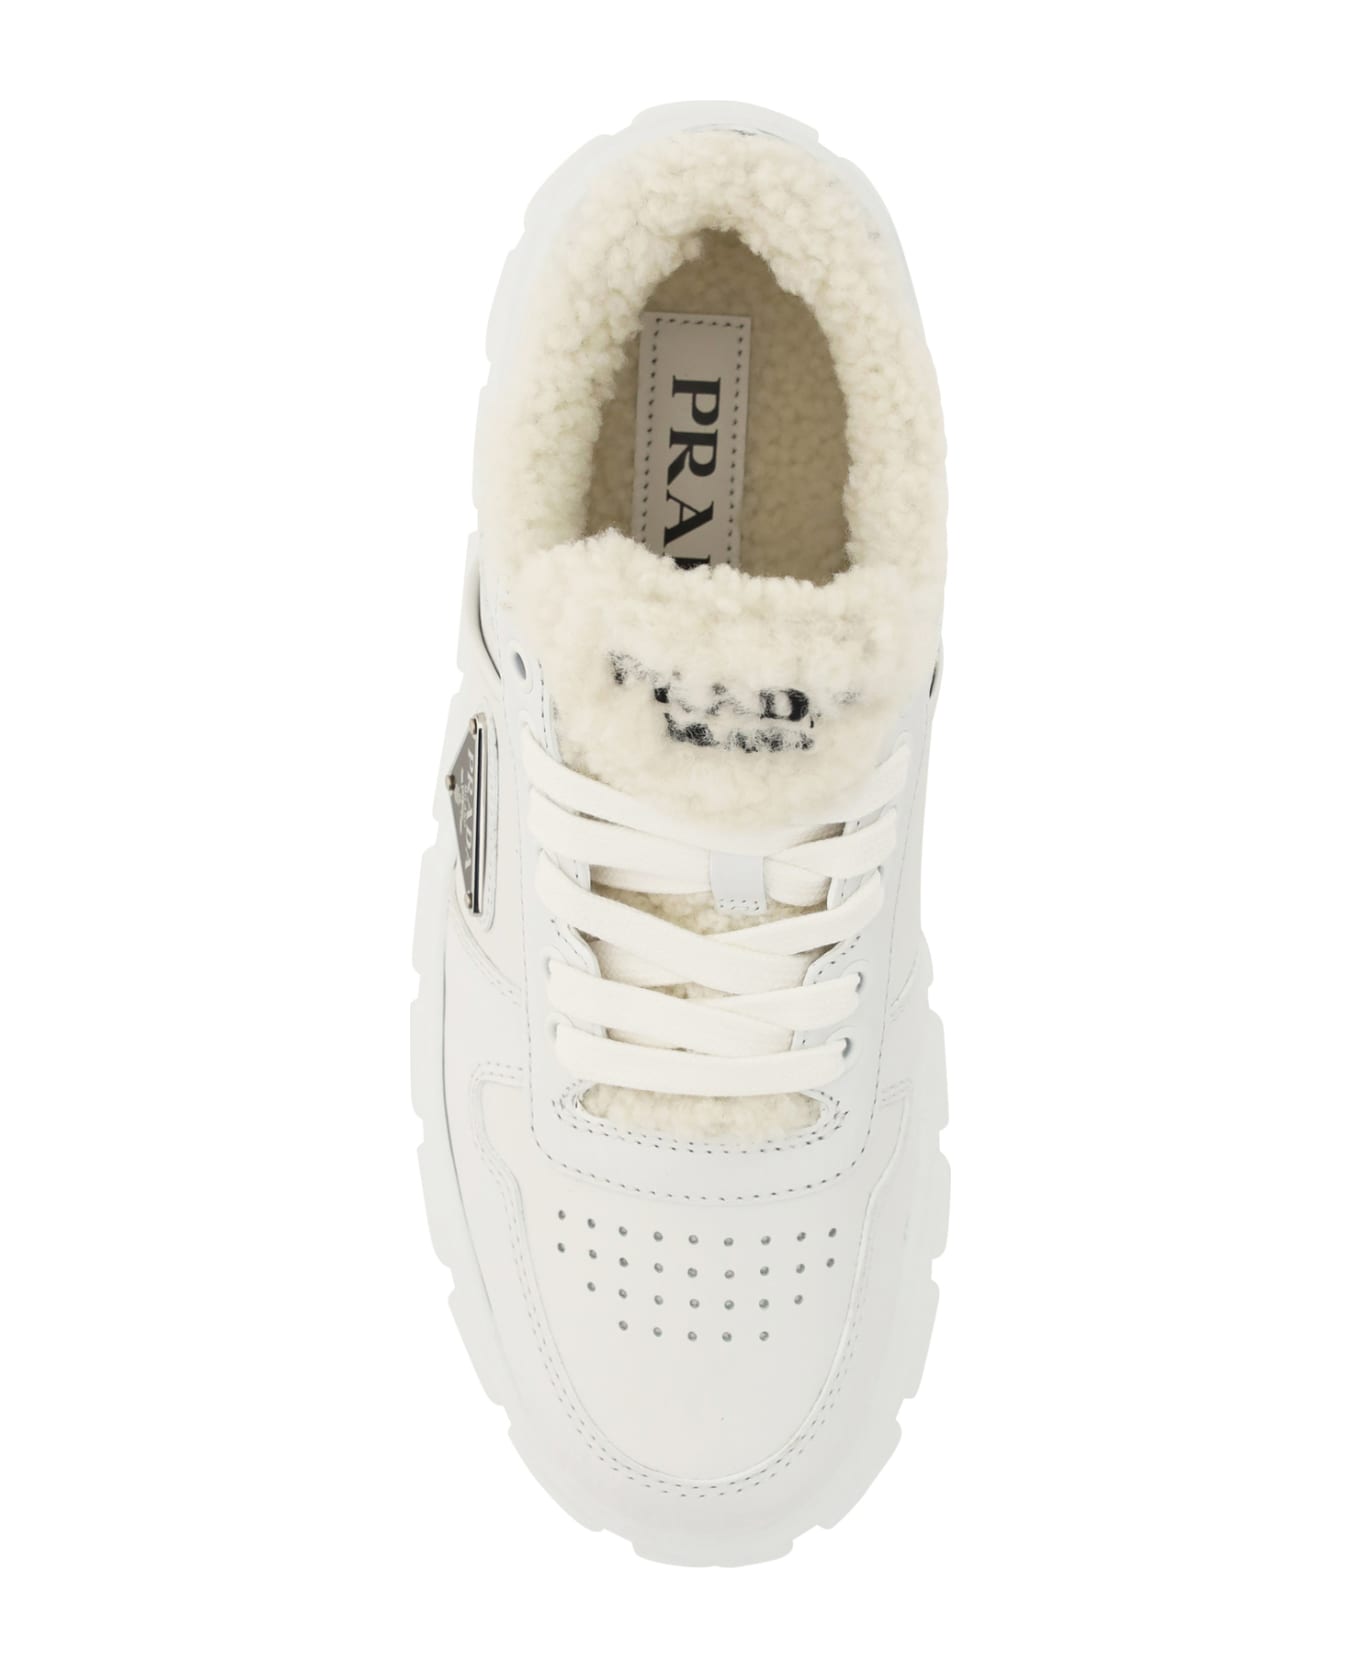 Prada Winter Sneakers - Bianco スニーカー